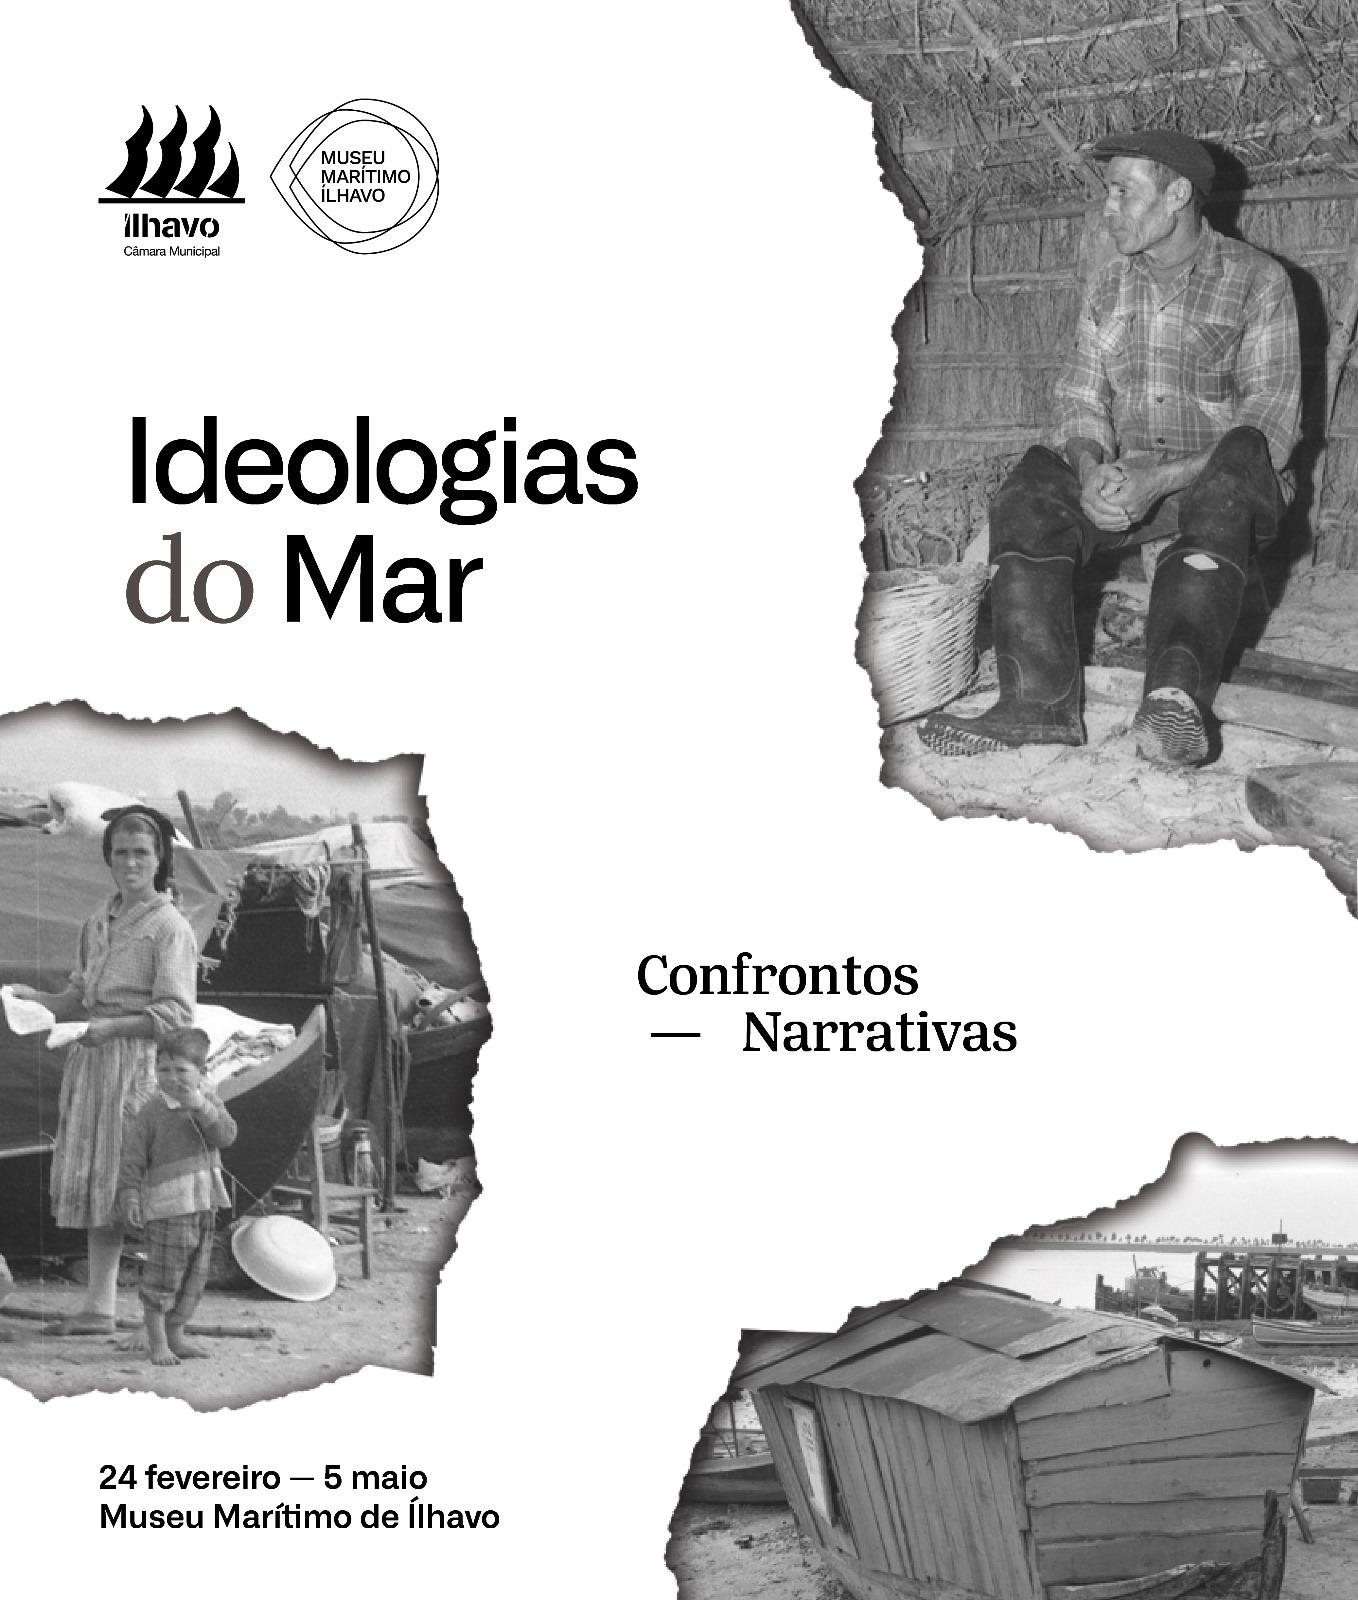 Exposição - "Ideologias do Mar: Confrontos e Narrativas"